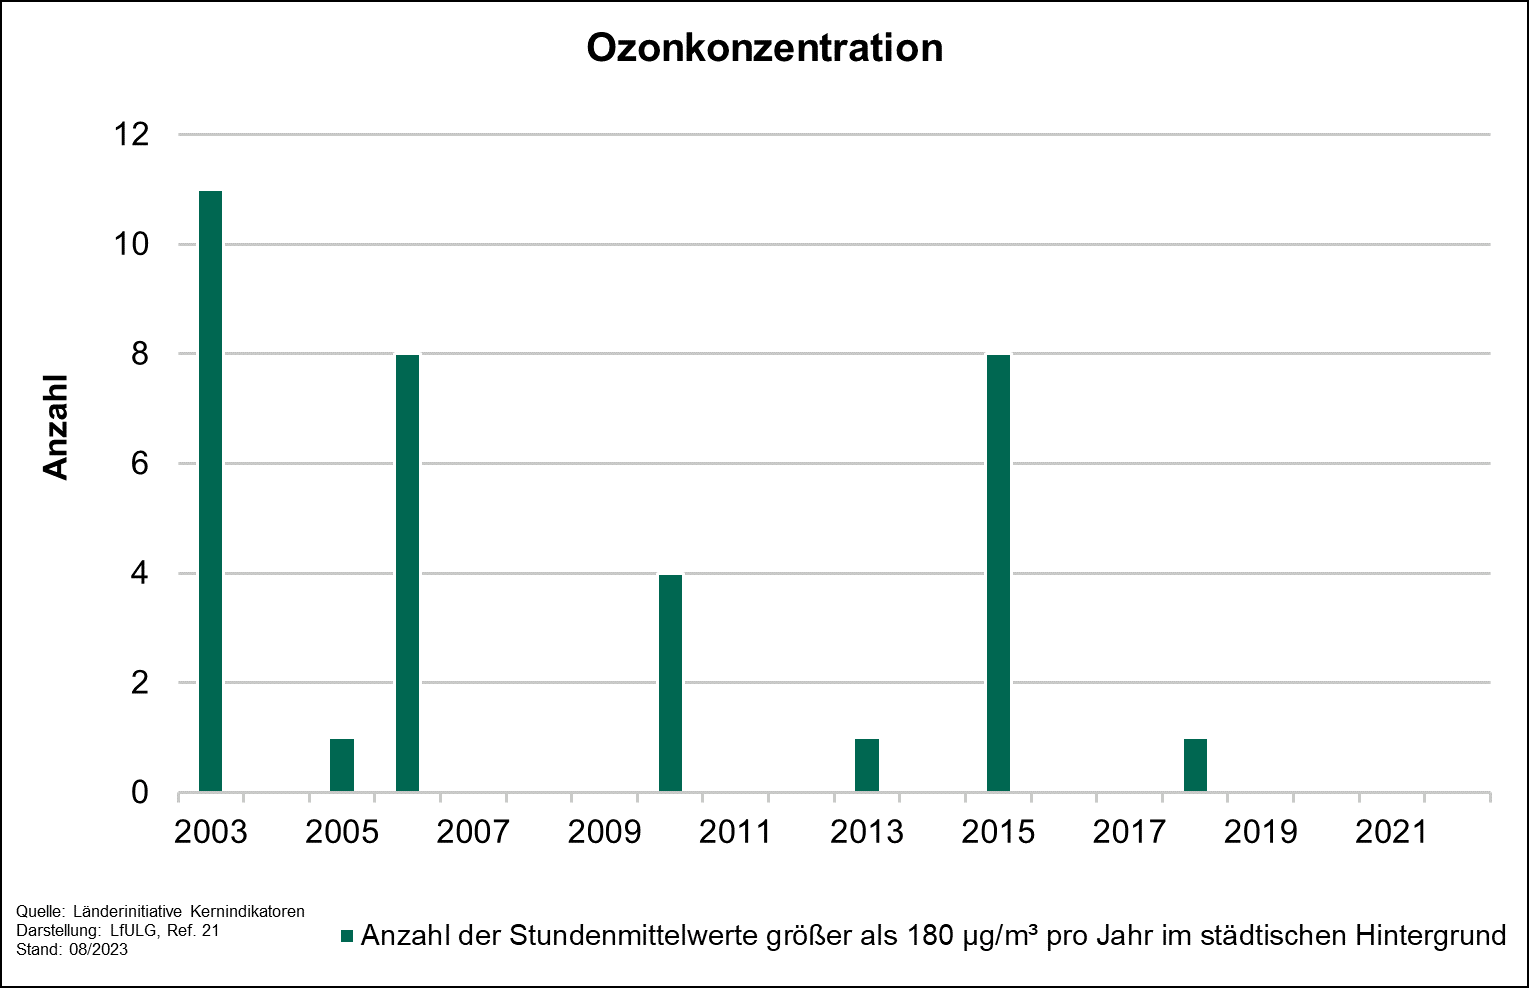 Die Grafik zeigt die Entwicklung des Indikators Ozonkonzentration für die Jahre 2003 bis 2022. Der Indikator wird anhand der Anzahl der Stundenmittelwerte, die größer als 180 Mikrogramm pro Kubikmeter und Jahr im städtischen Hintergrund sind, ermittelt.